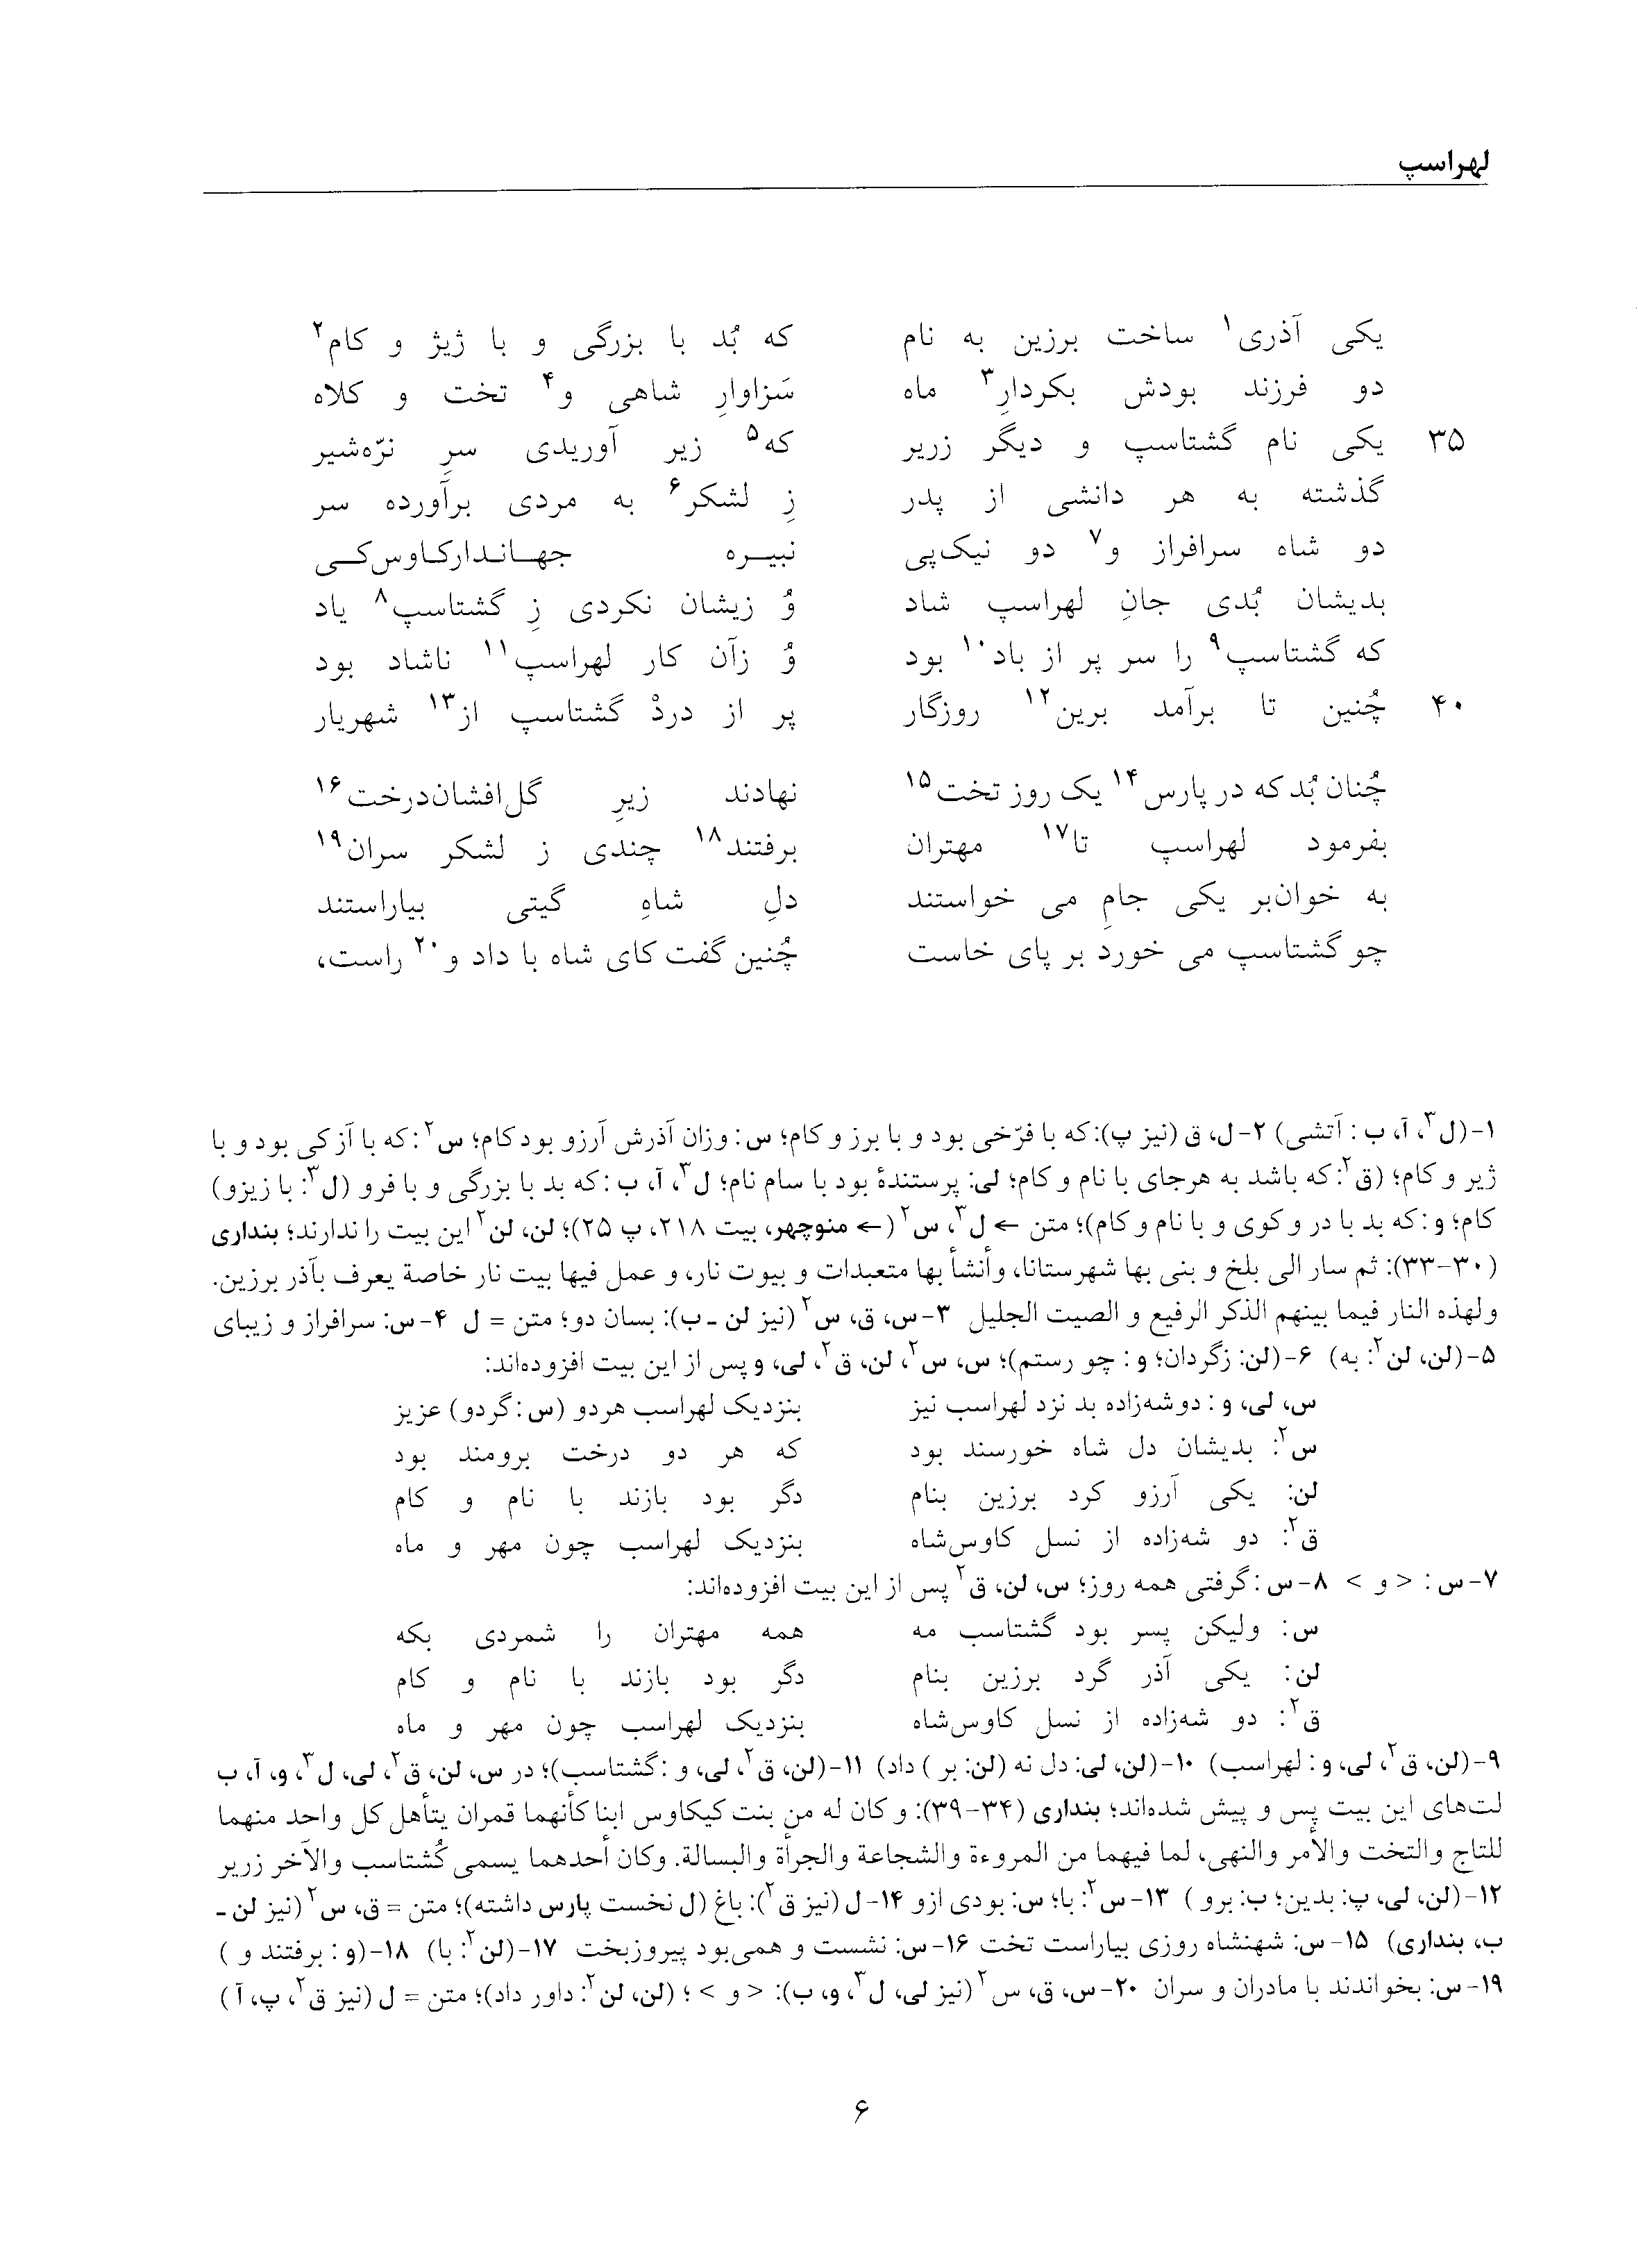 vol. 5, p. 6